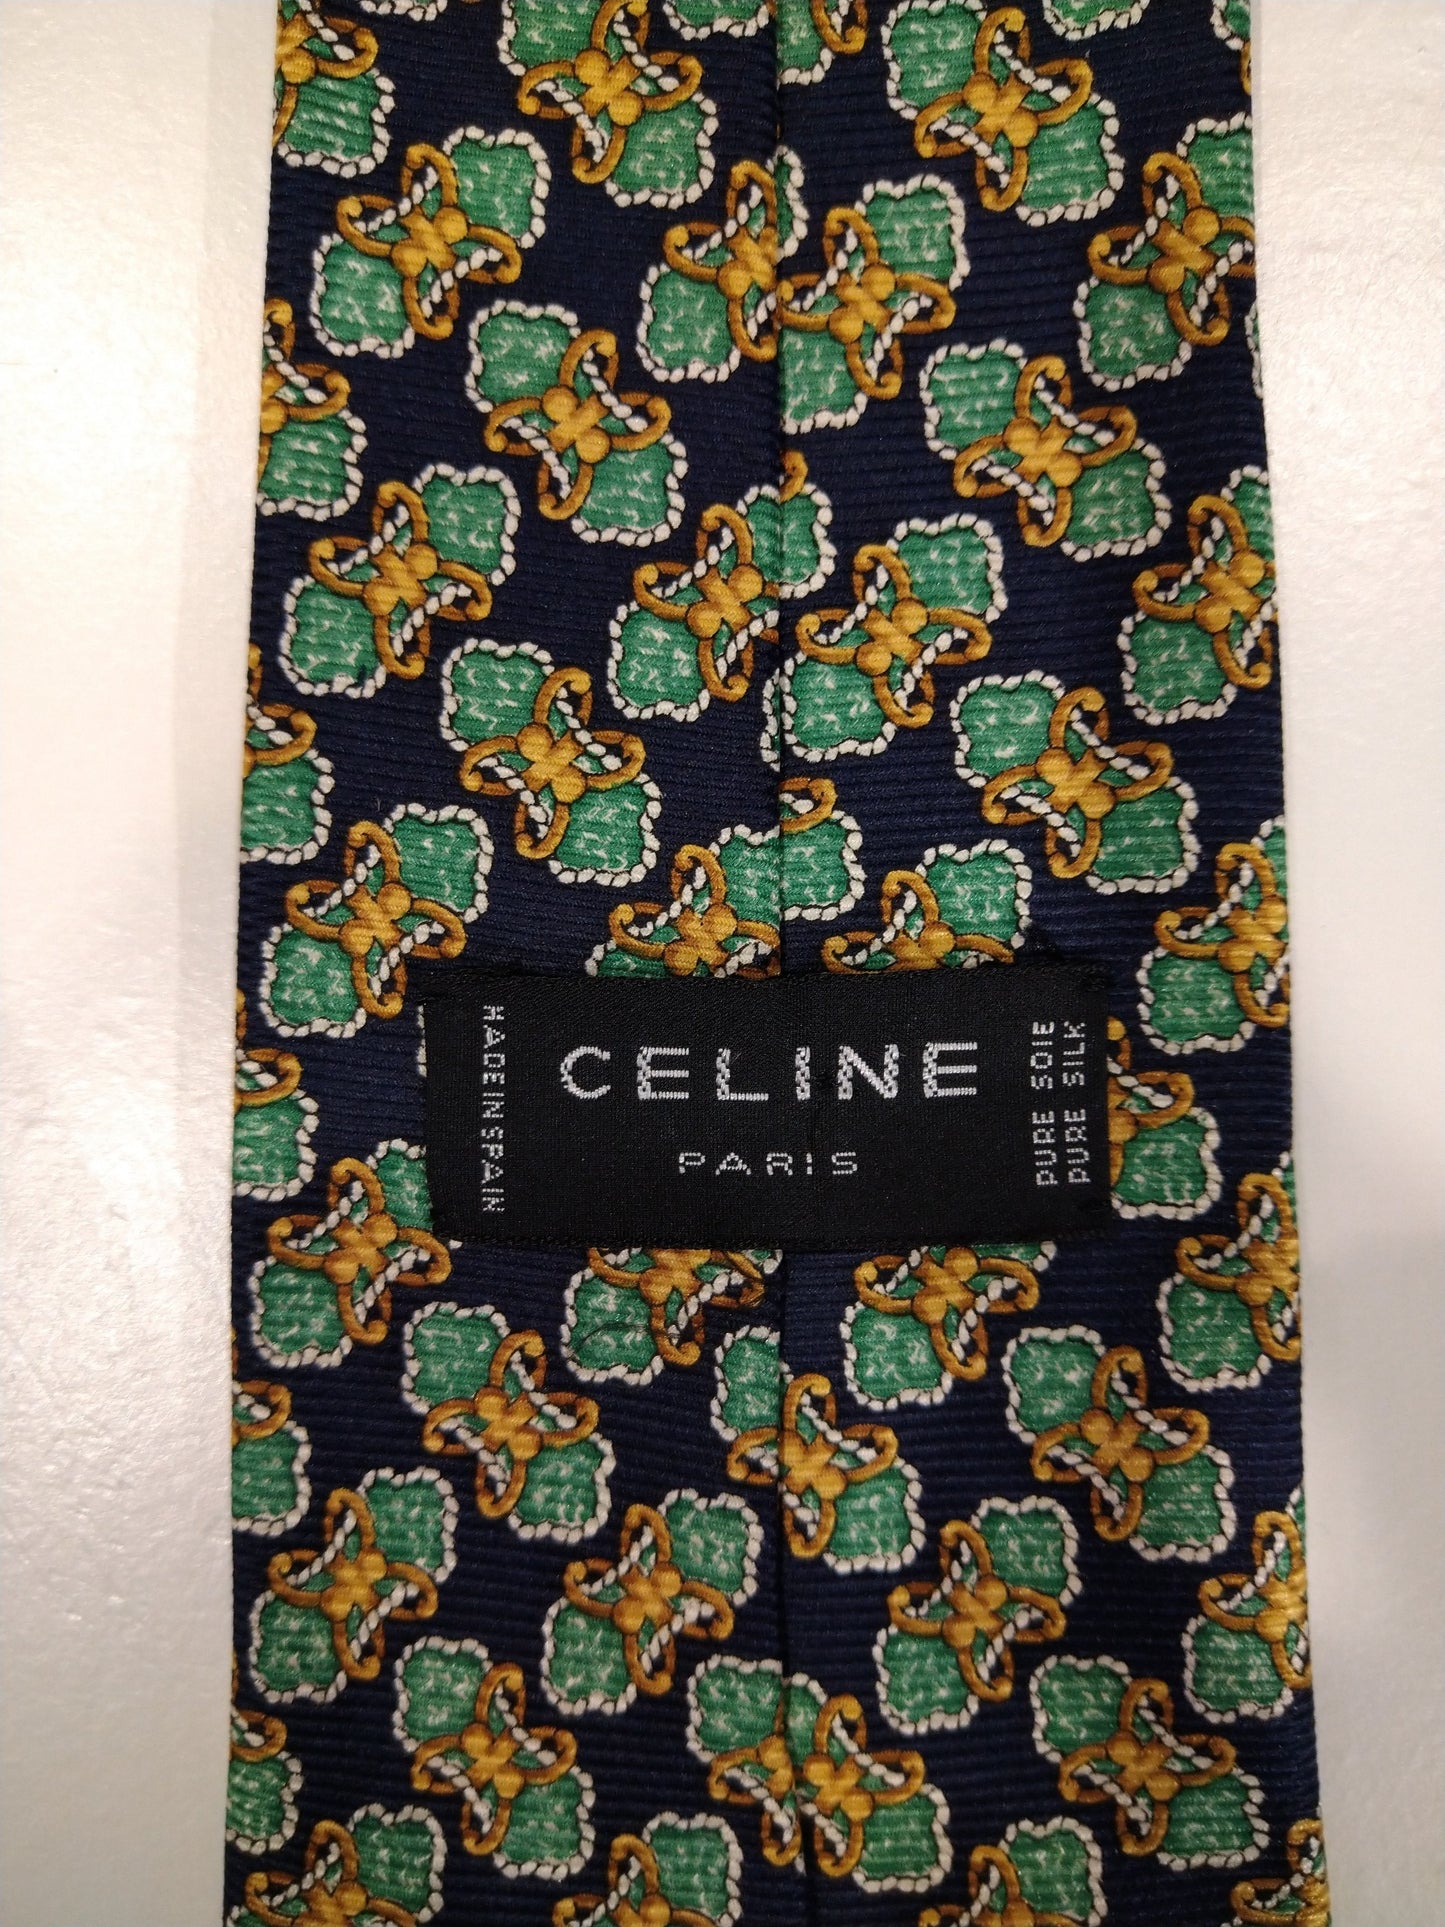 Celine Paris zijde stropdas. Groen blauw geel motief.